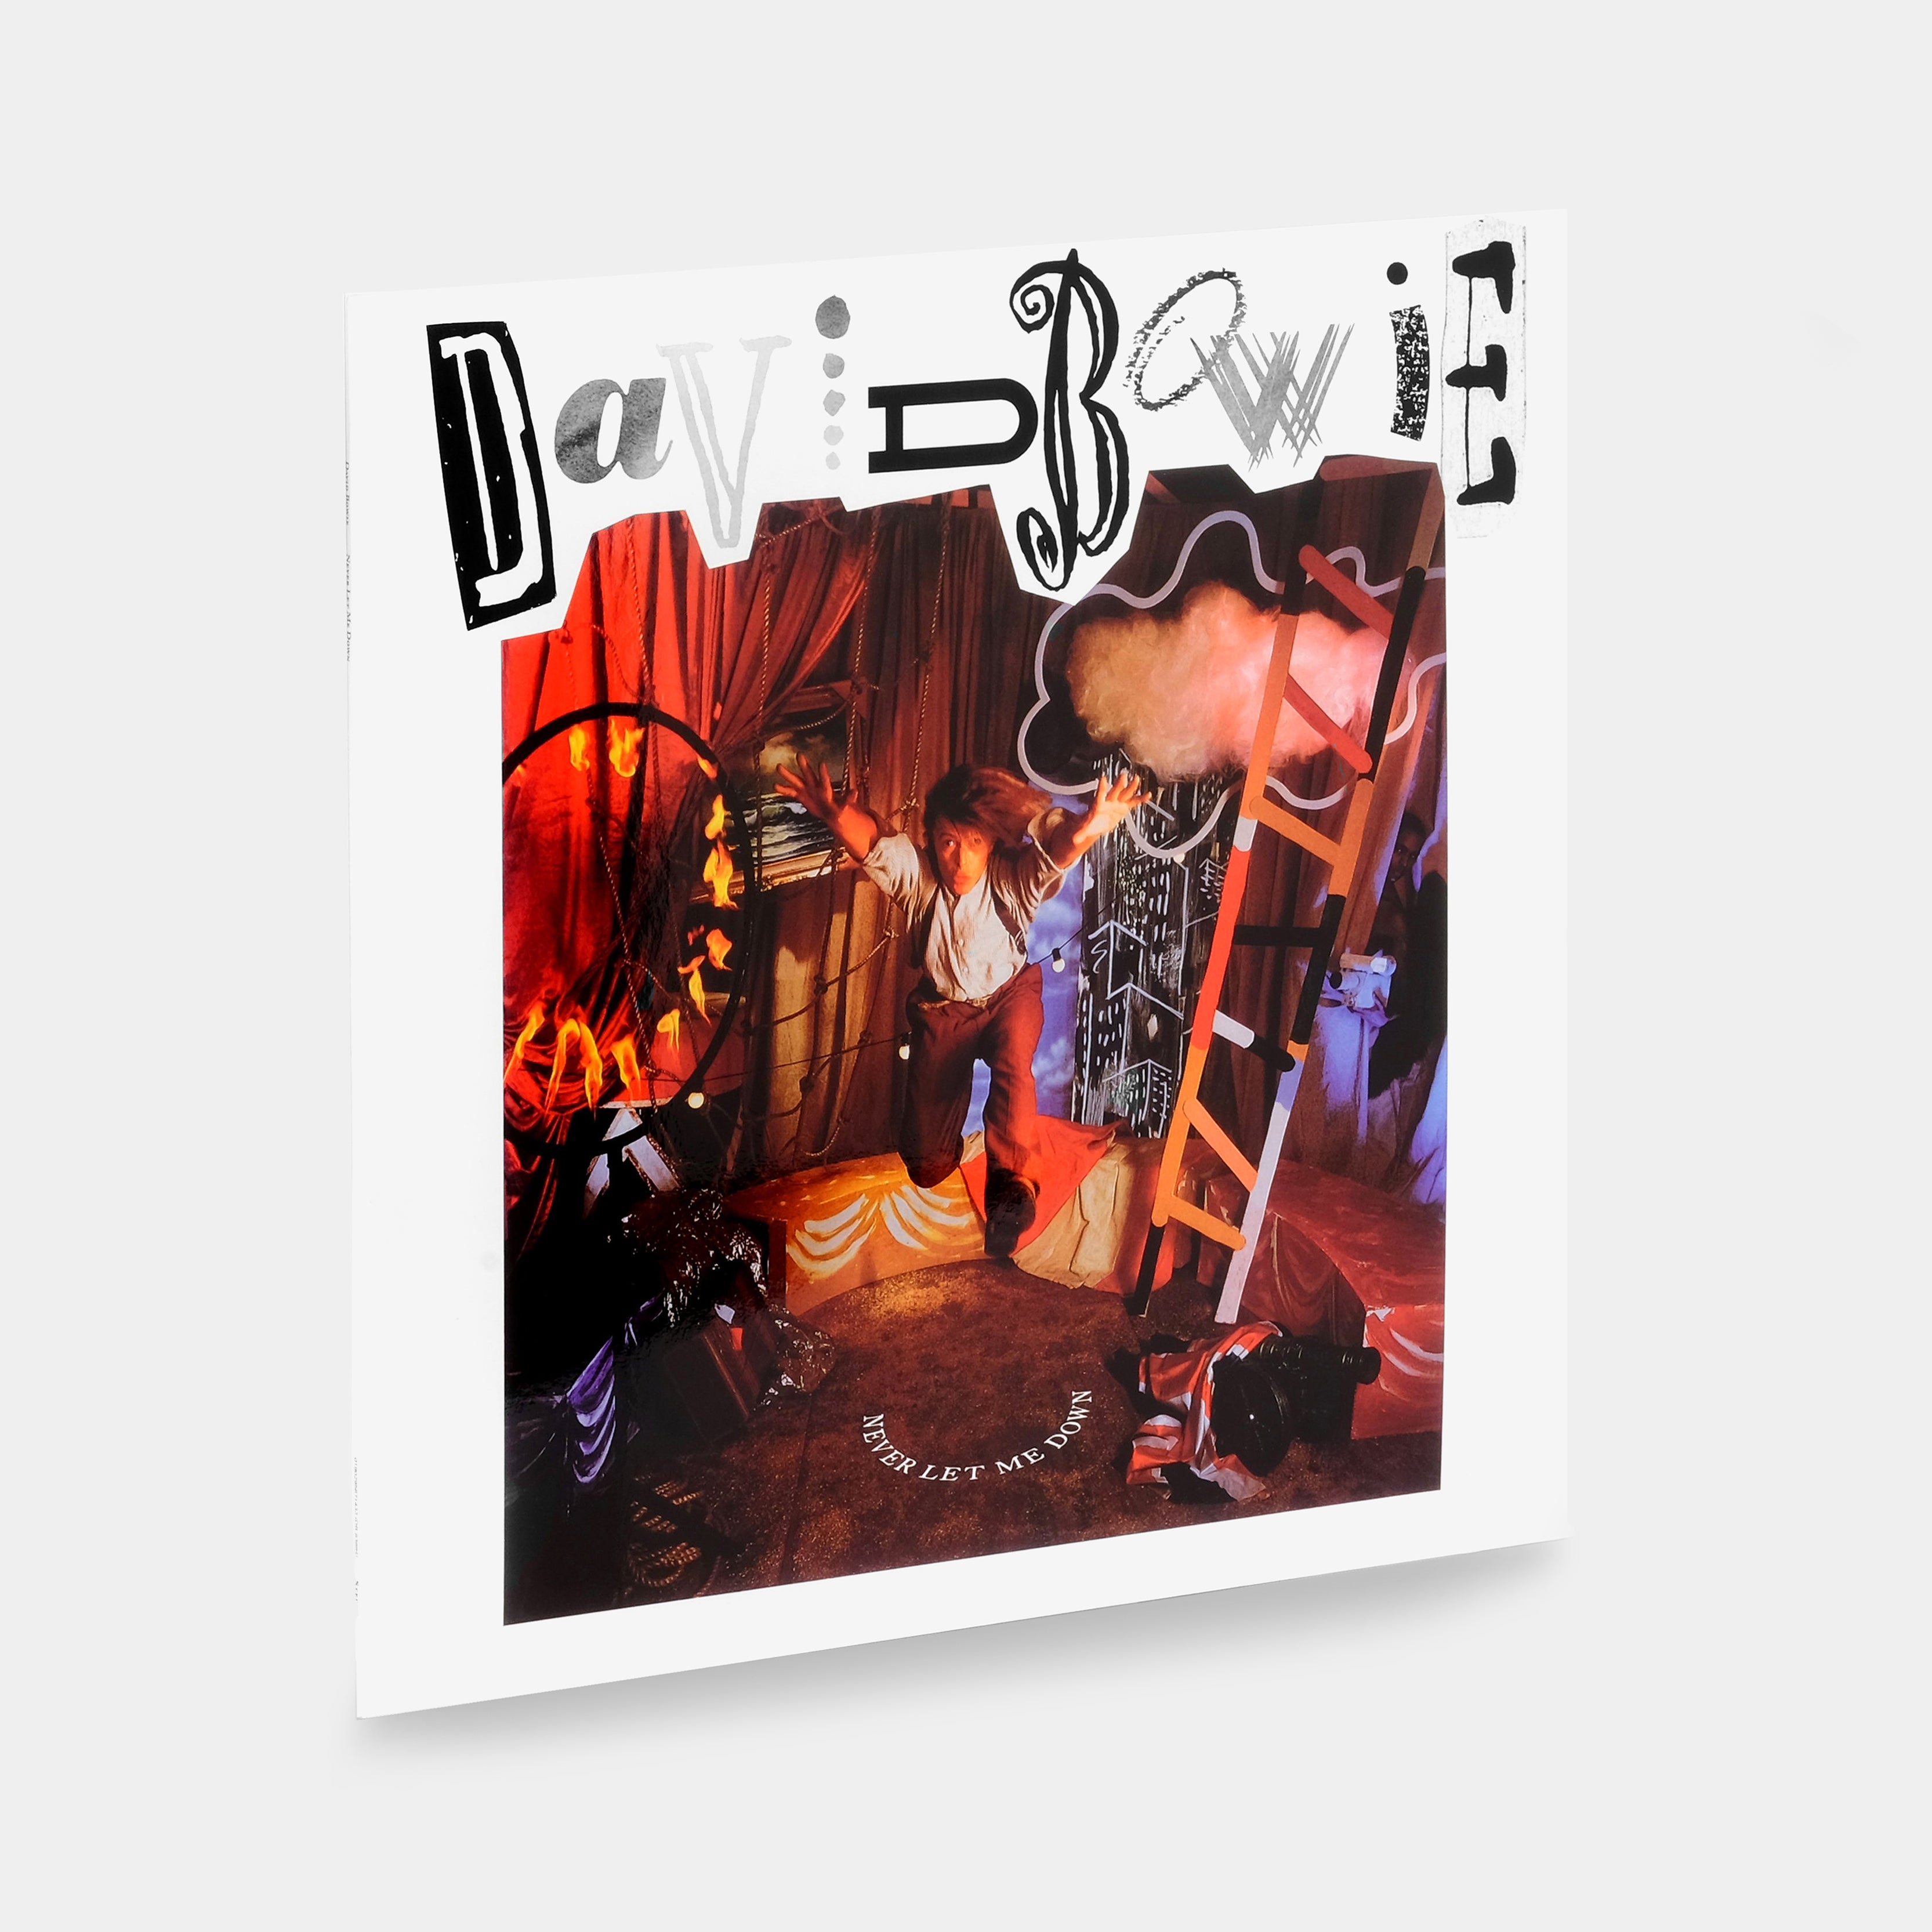 David Bowie - Never Let Me Down LP Vinyl Record